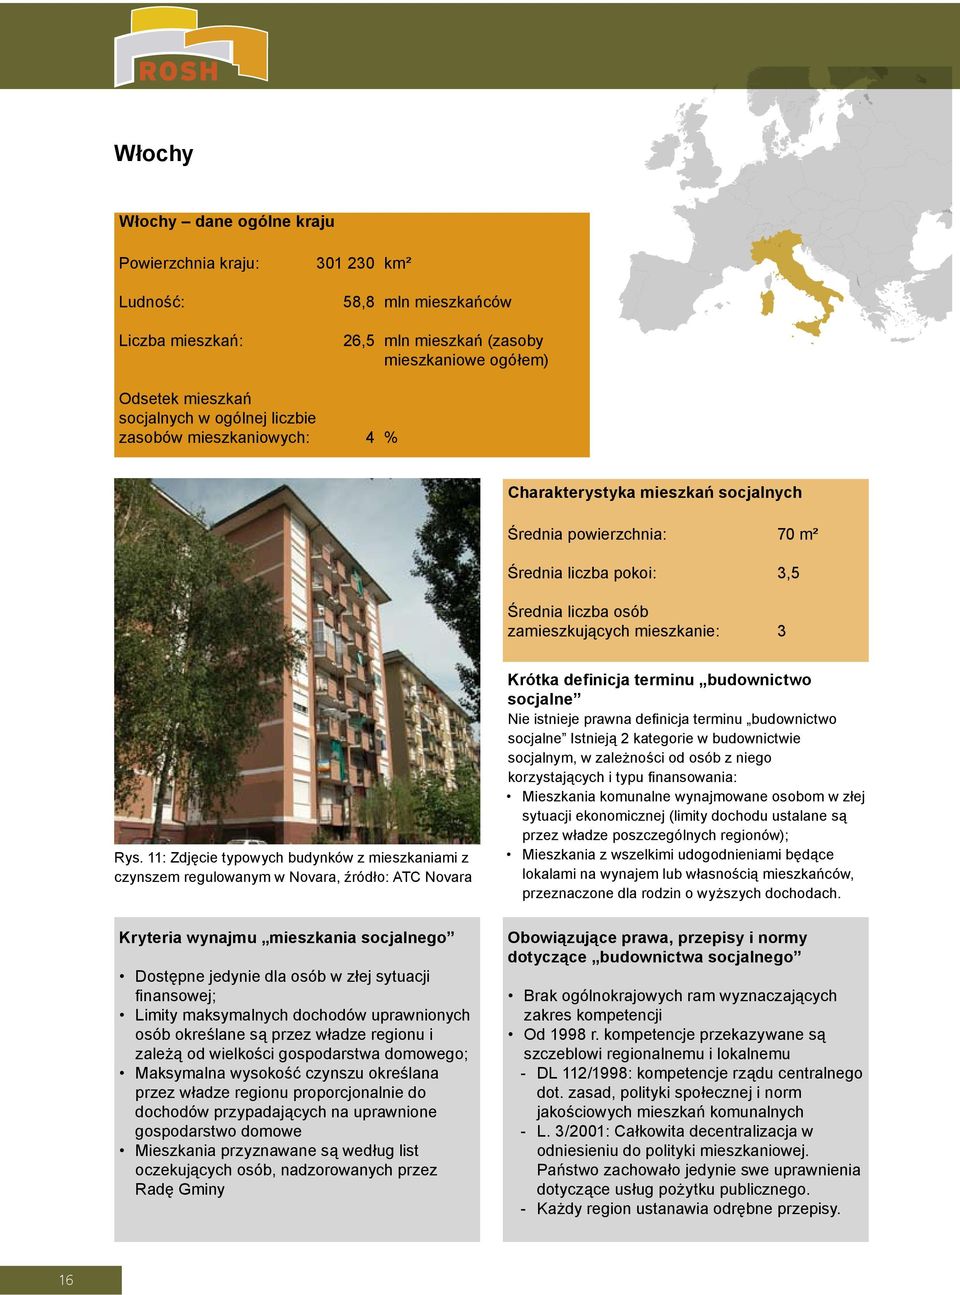 11: Zdjęcie typowych budynków z mieszkaniami z czynszem regulowanym w Novara, źródło: ATC Novara Krótka definicja terminu budownictwo socjalne Nie istnieje prawna definicja terminu budownictwo